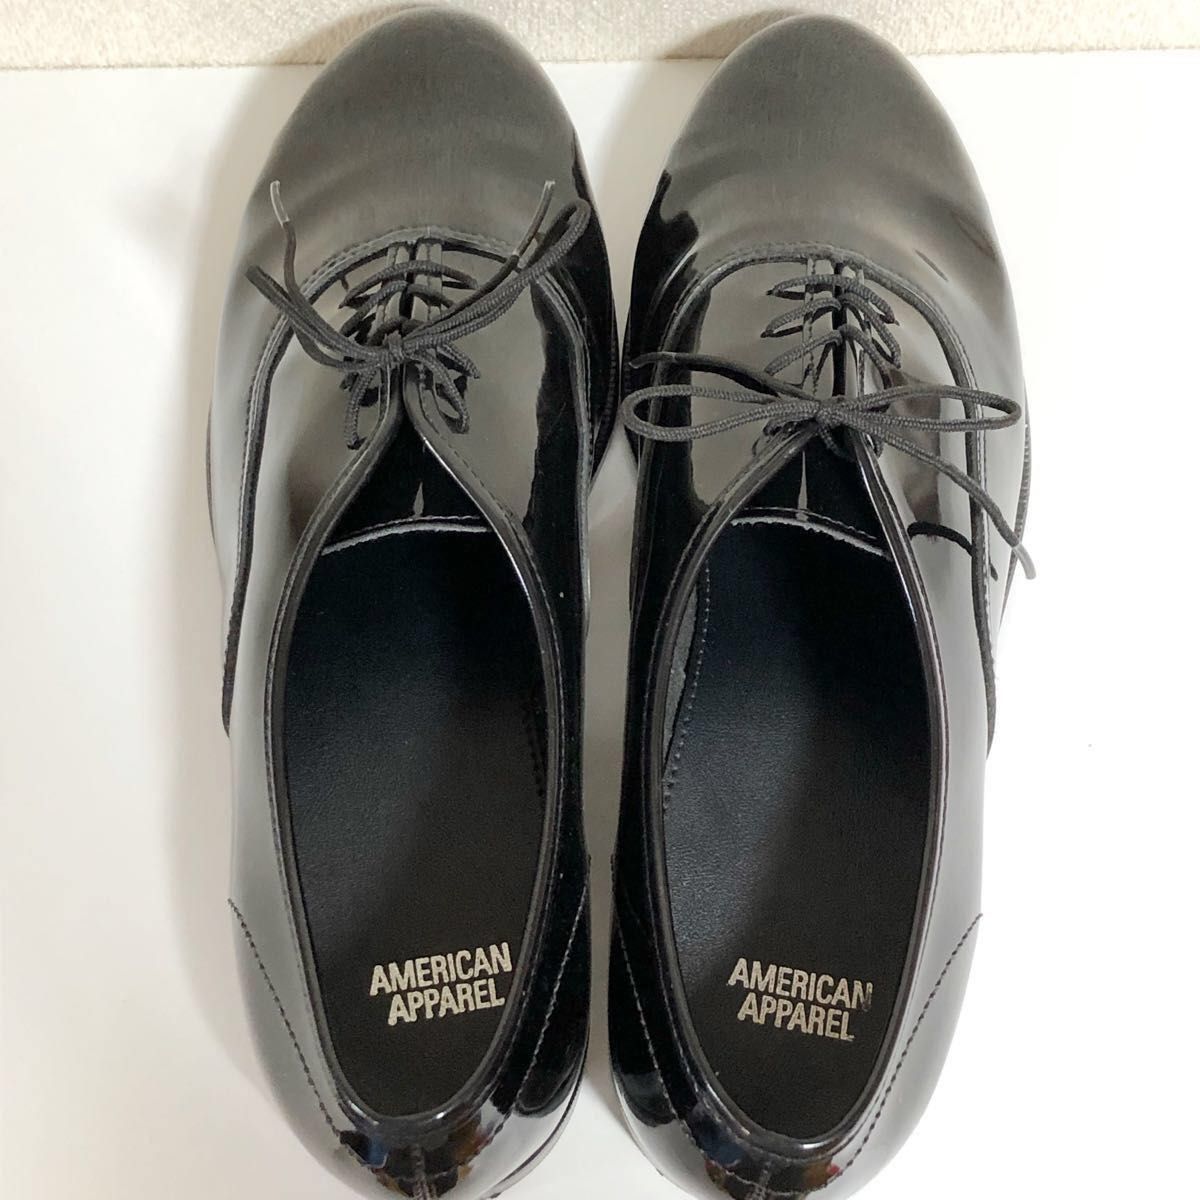 American Apparelエナメル靴 - スニーカー